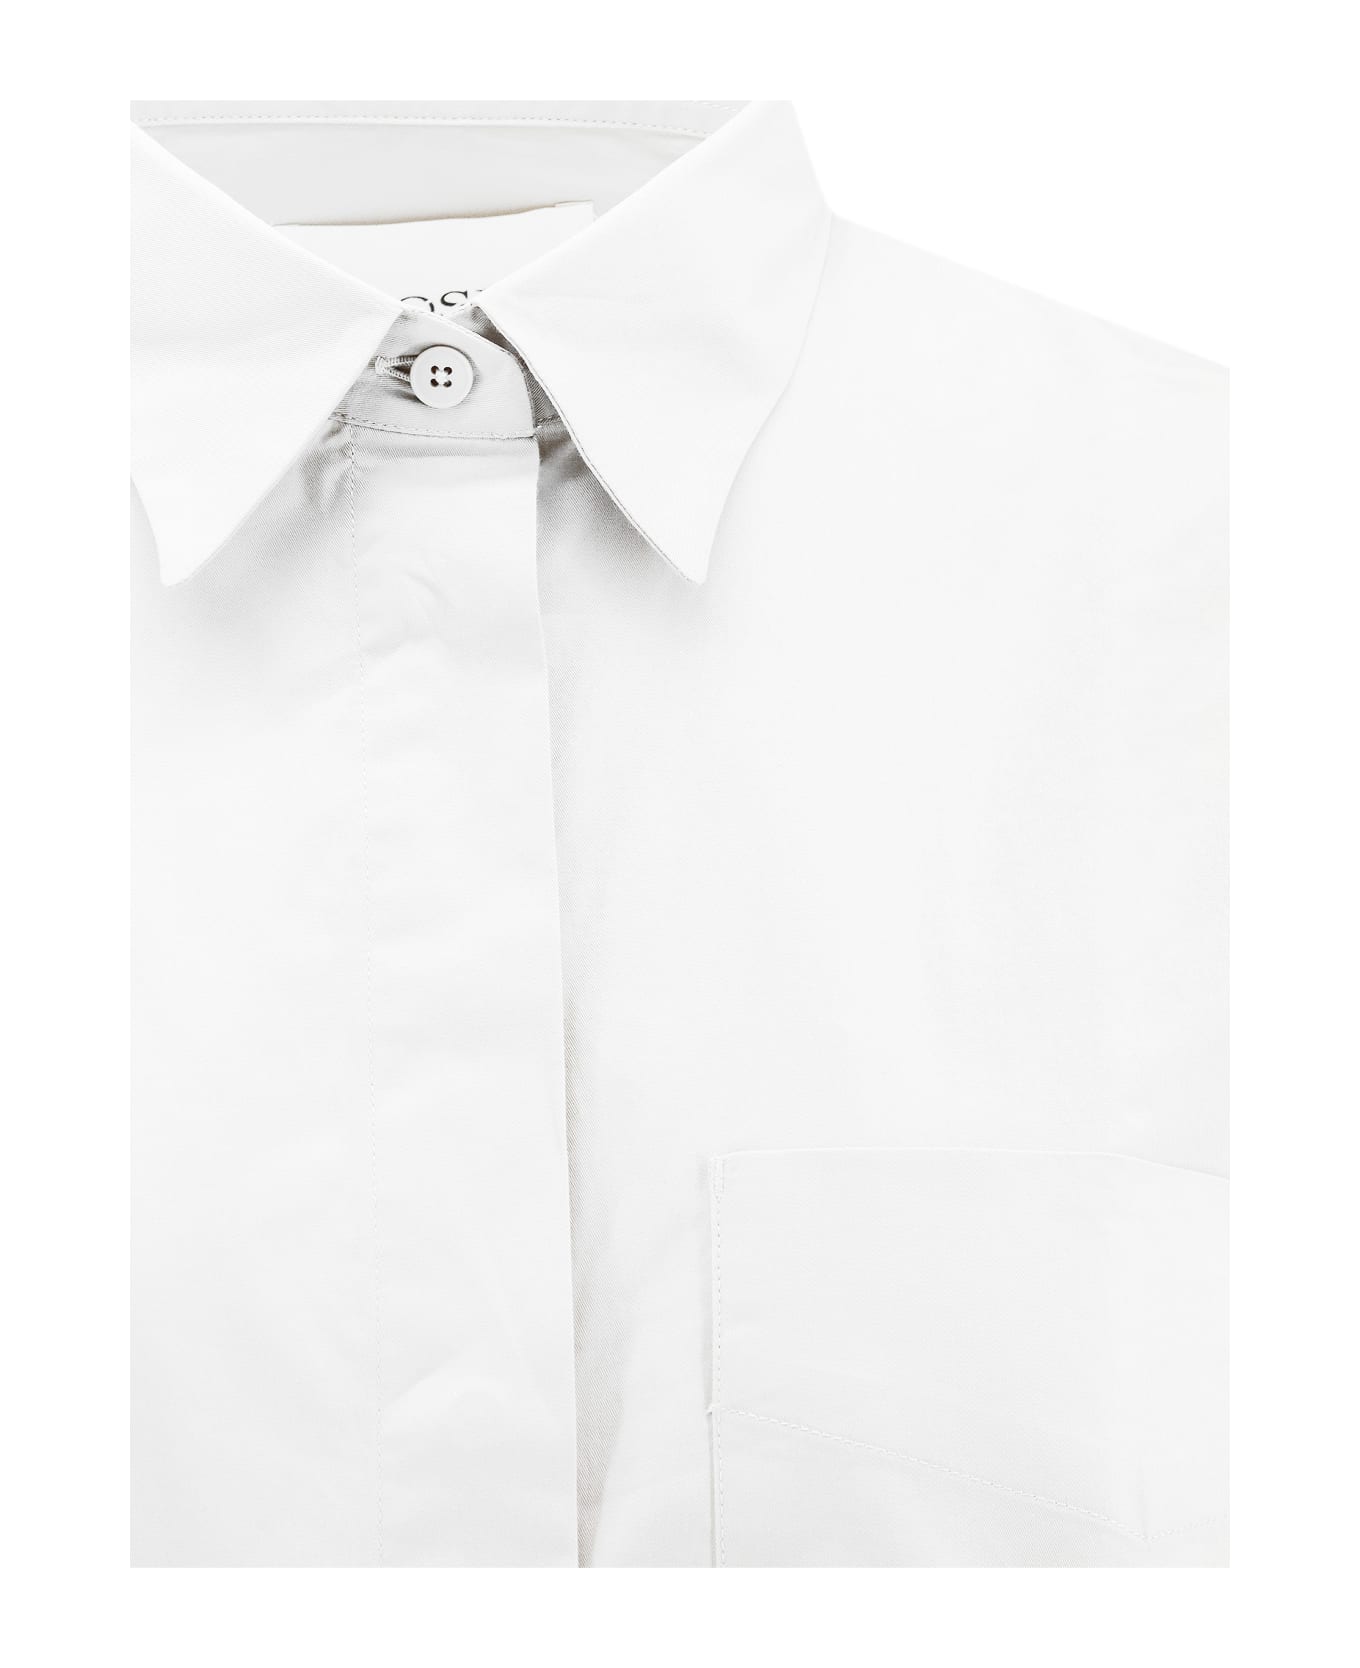 Closed Shirt - White